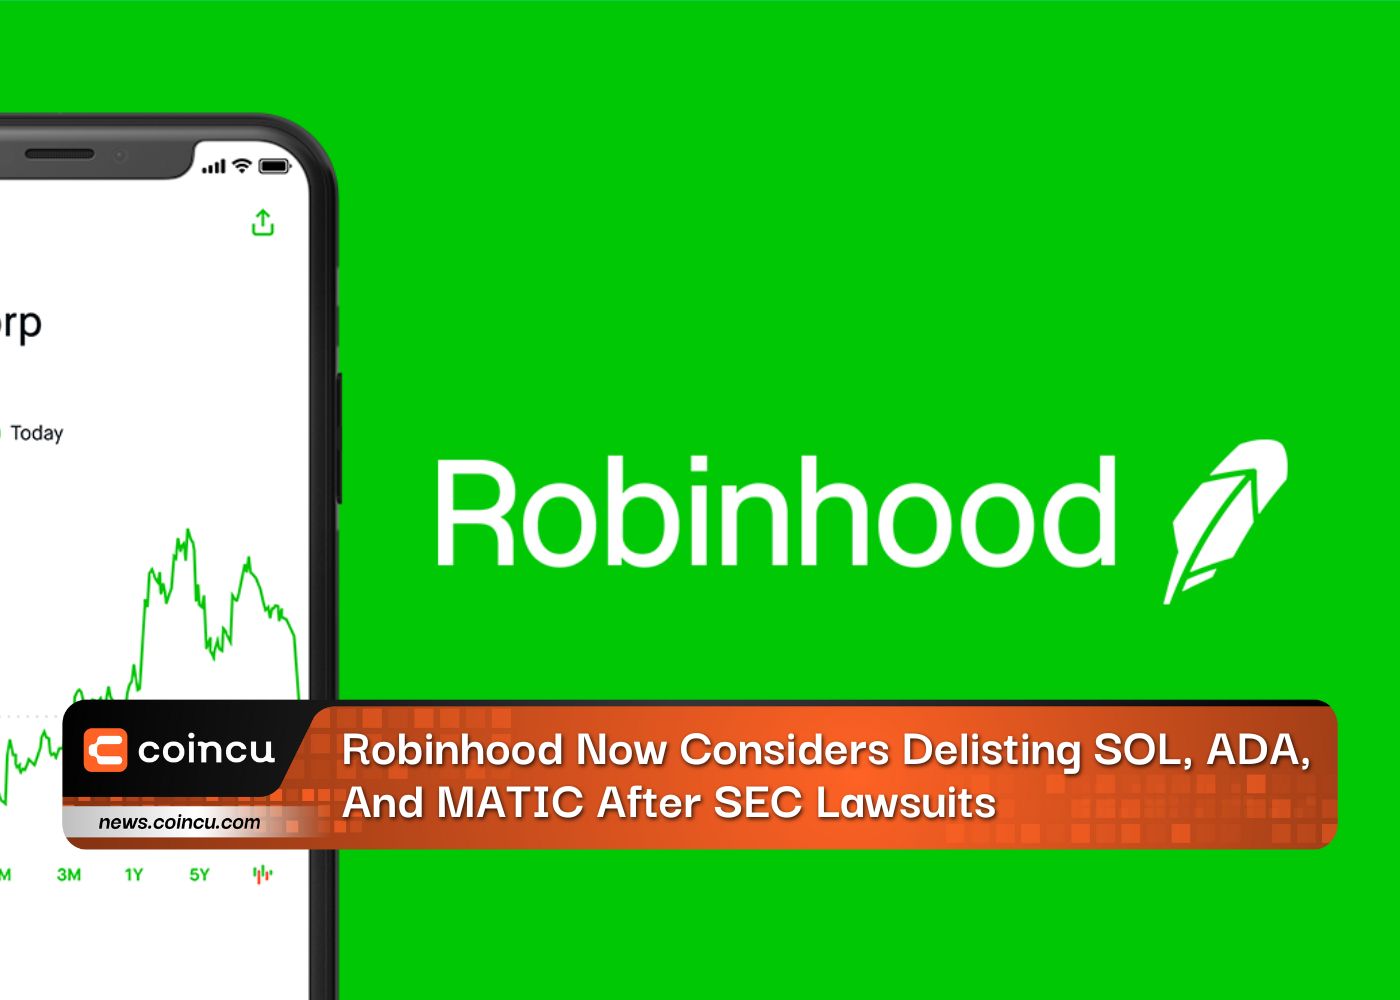 Robinhood erwägt nun Delisting von SOL, ADA und MATIC nach SEC-Klagen: Bericht